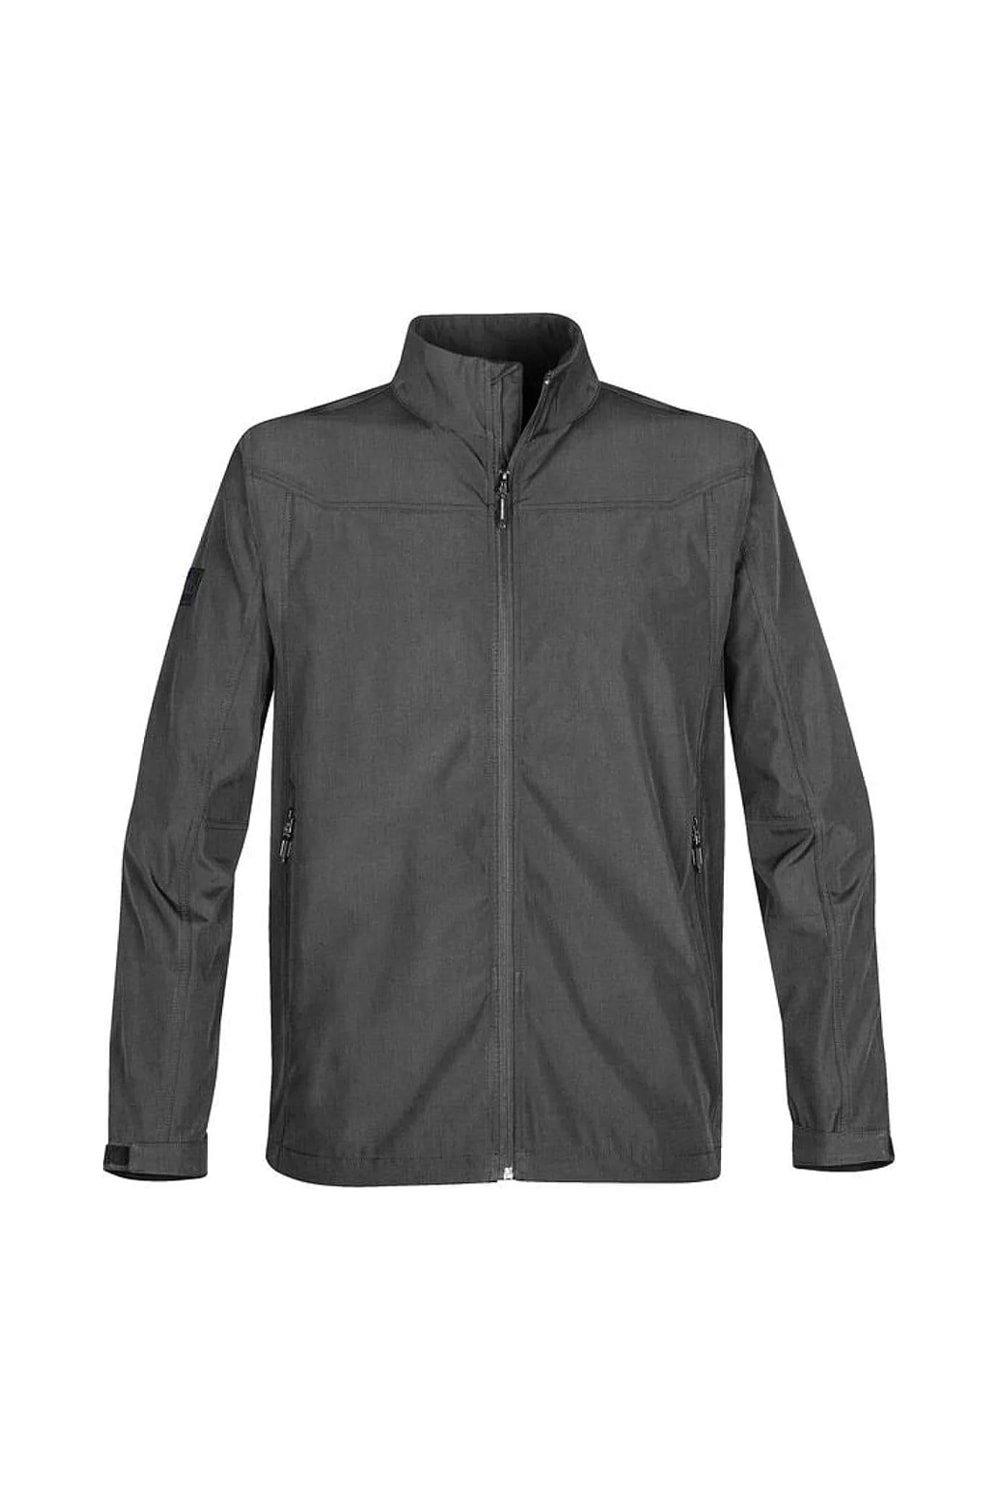 Куртка Endurance Soft Shell Stormtech, серый